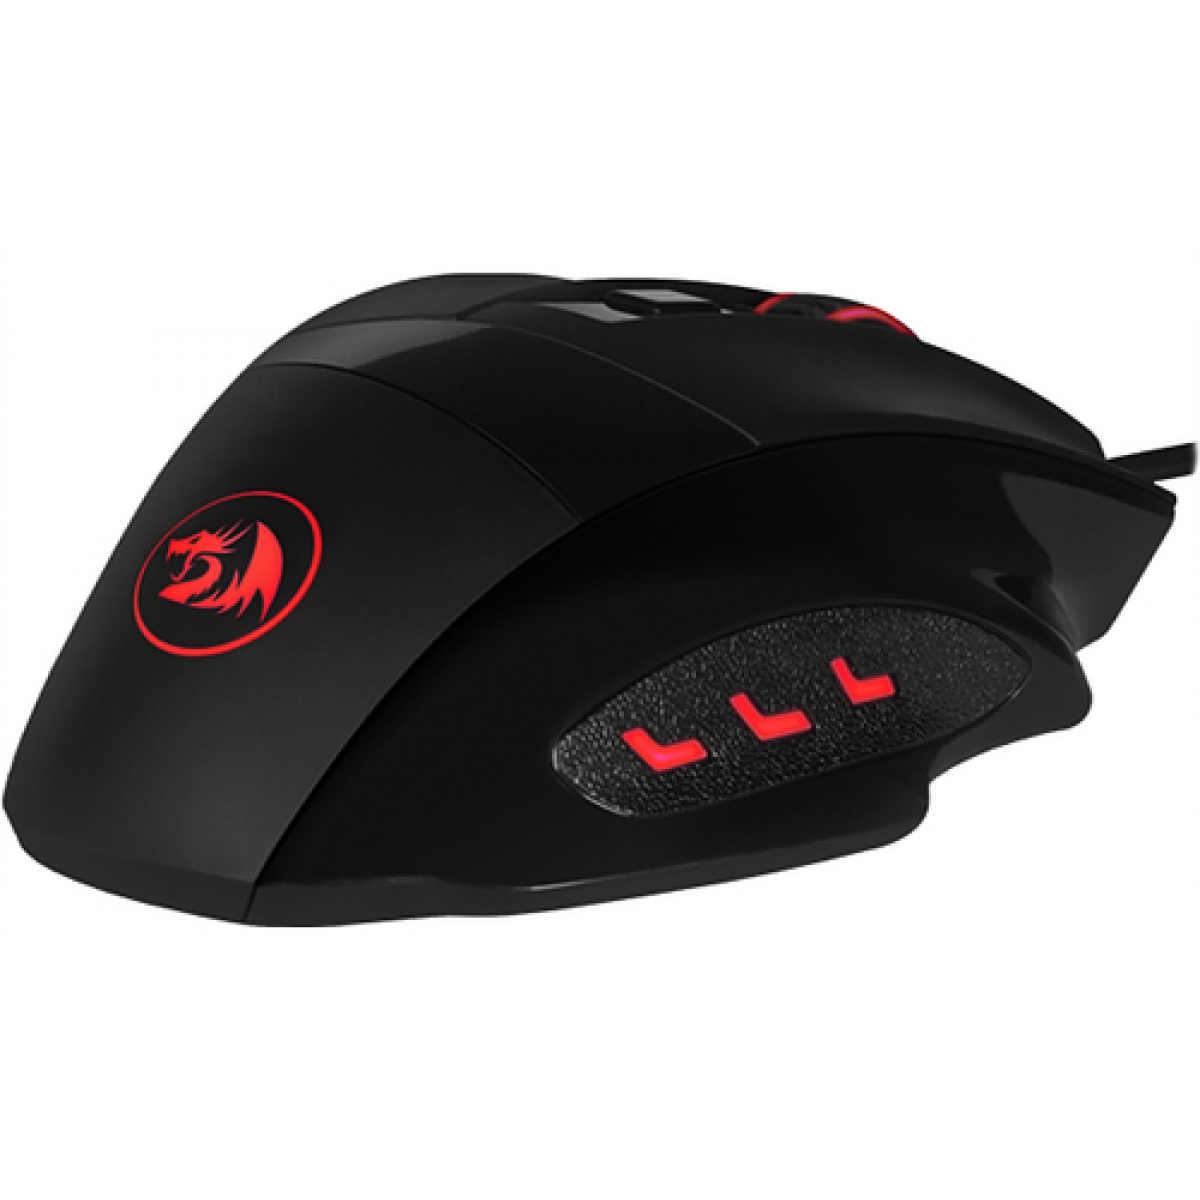 Mouse Gamer Redragon Phaser M609 RGB, 3200 DPI, 6 Botões, Black